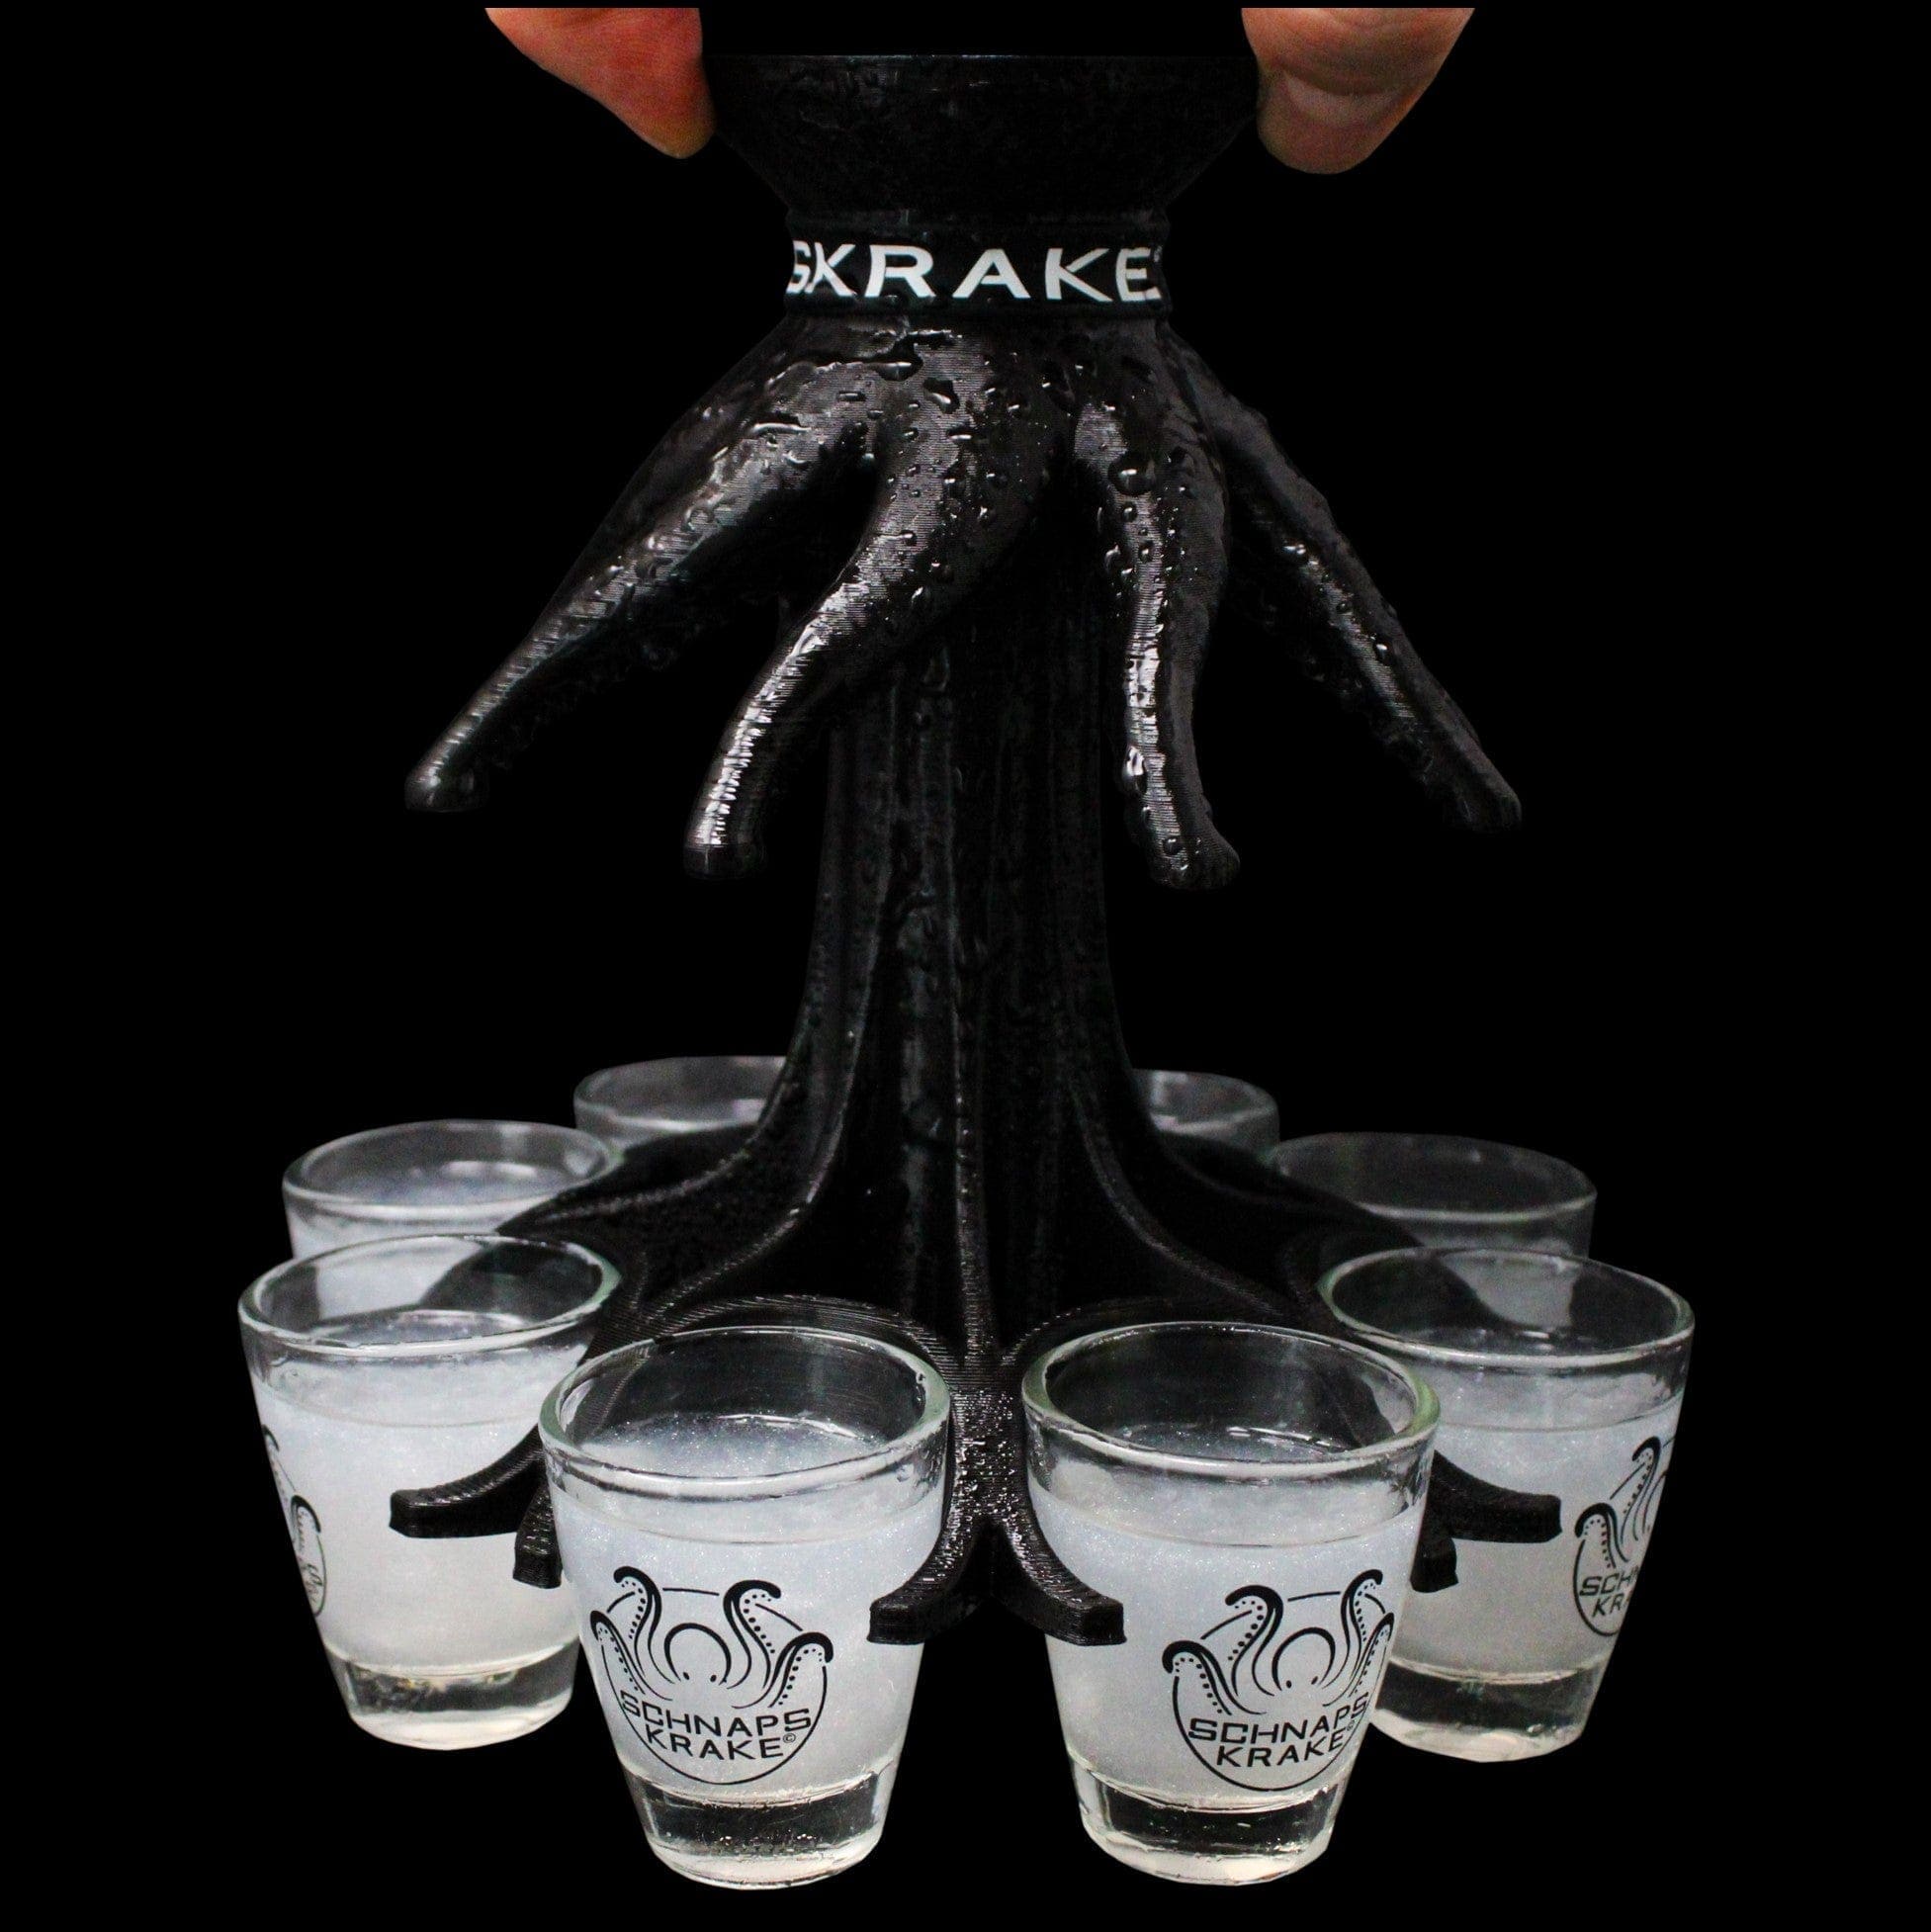 Schnapskrake schwarz mit befüllten Gläsern wird getragen